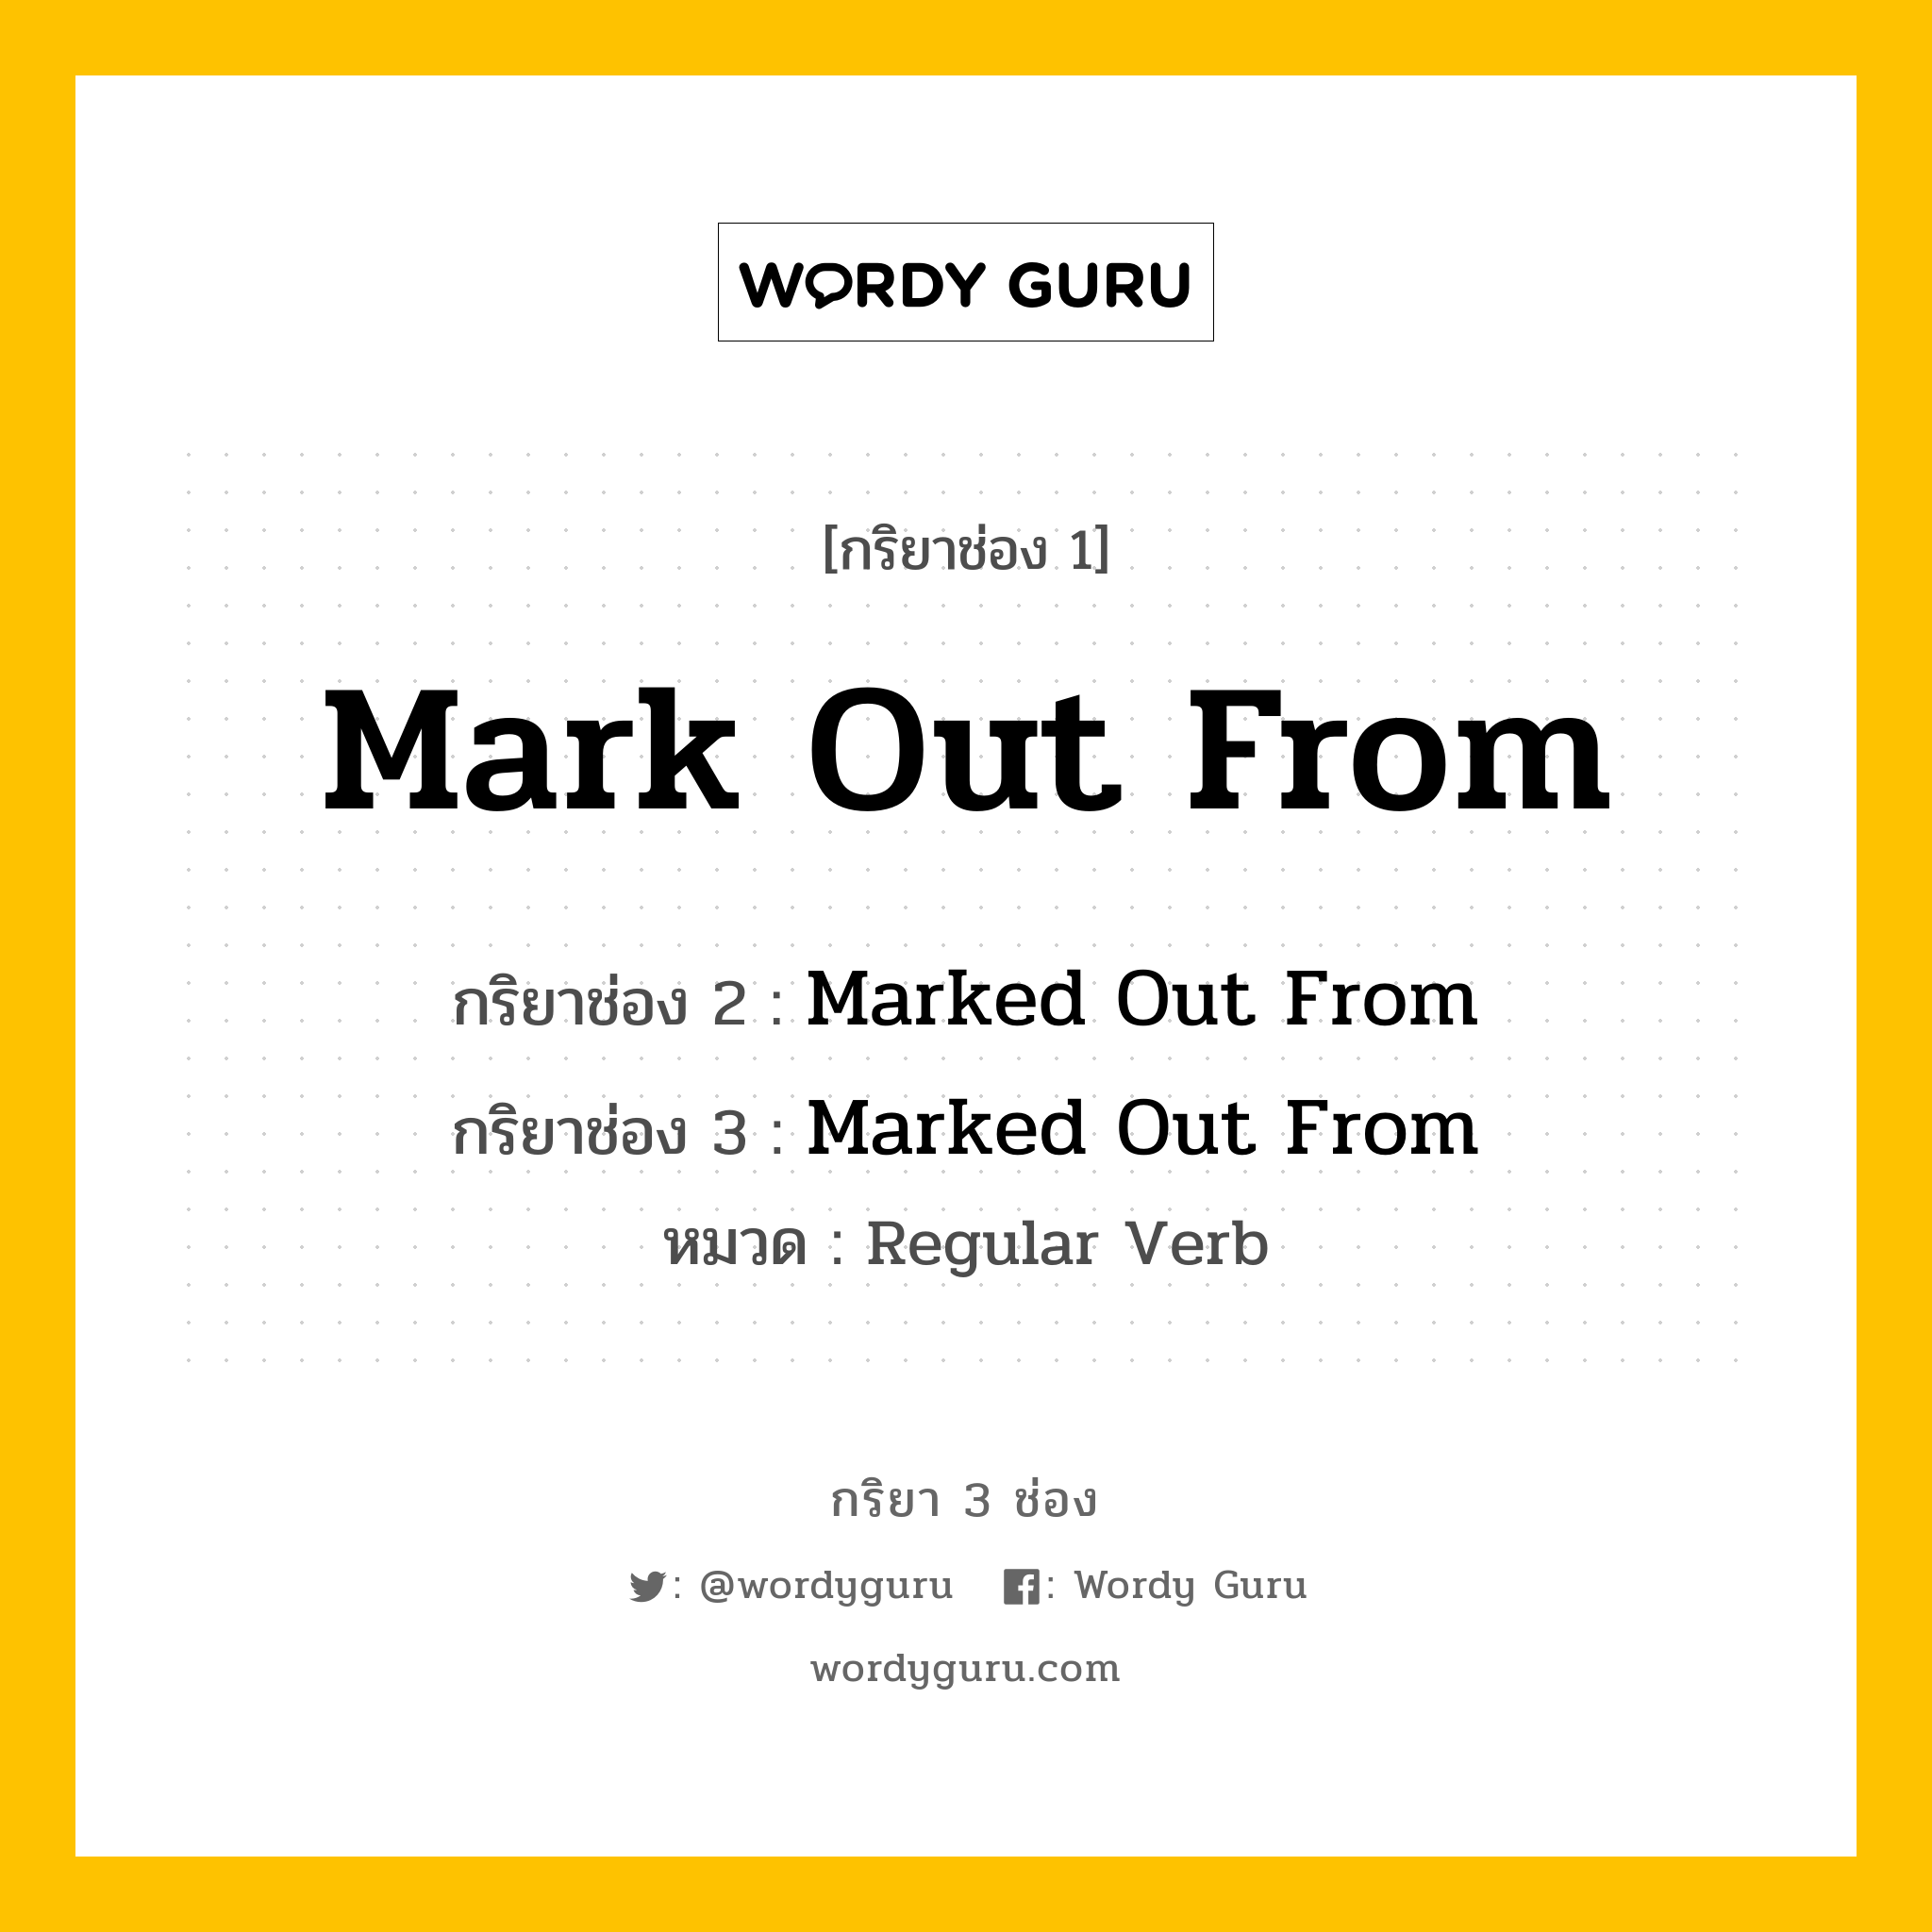 กริยา 3 ช่อง: Mark Out From ช่อง 2 Mark Out From ช่อง 3 คืออะไร, กริยาช่อง 1 Mark Out From กริยาช่อง 2 Marked Out From กริยาช่อง 3 Marked Out From หมวด Regular Verb หมวด Regular Verb